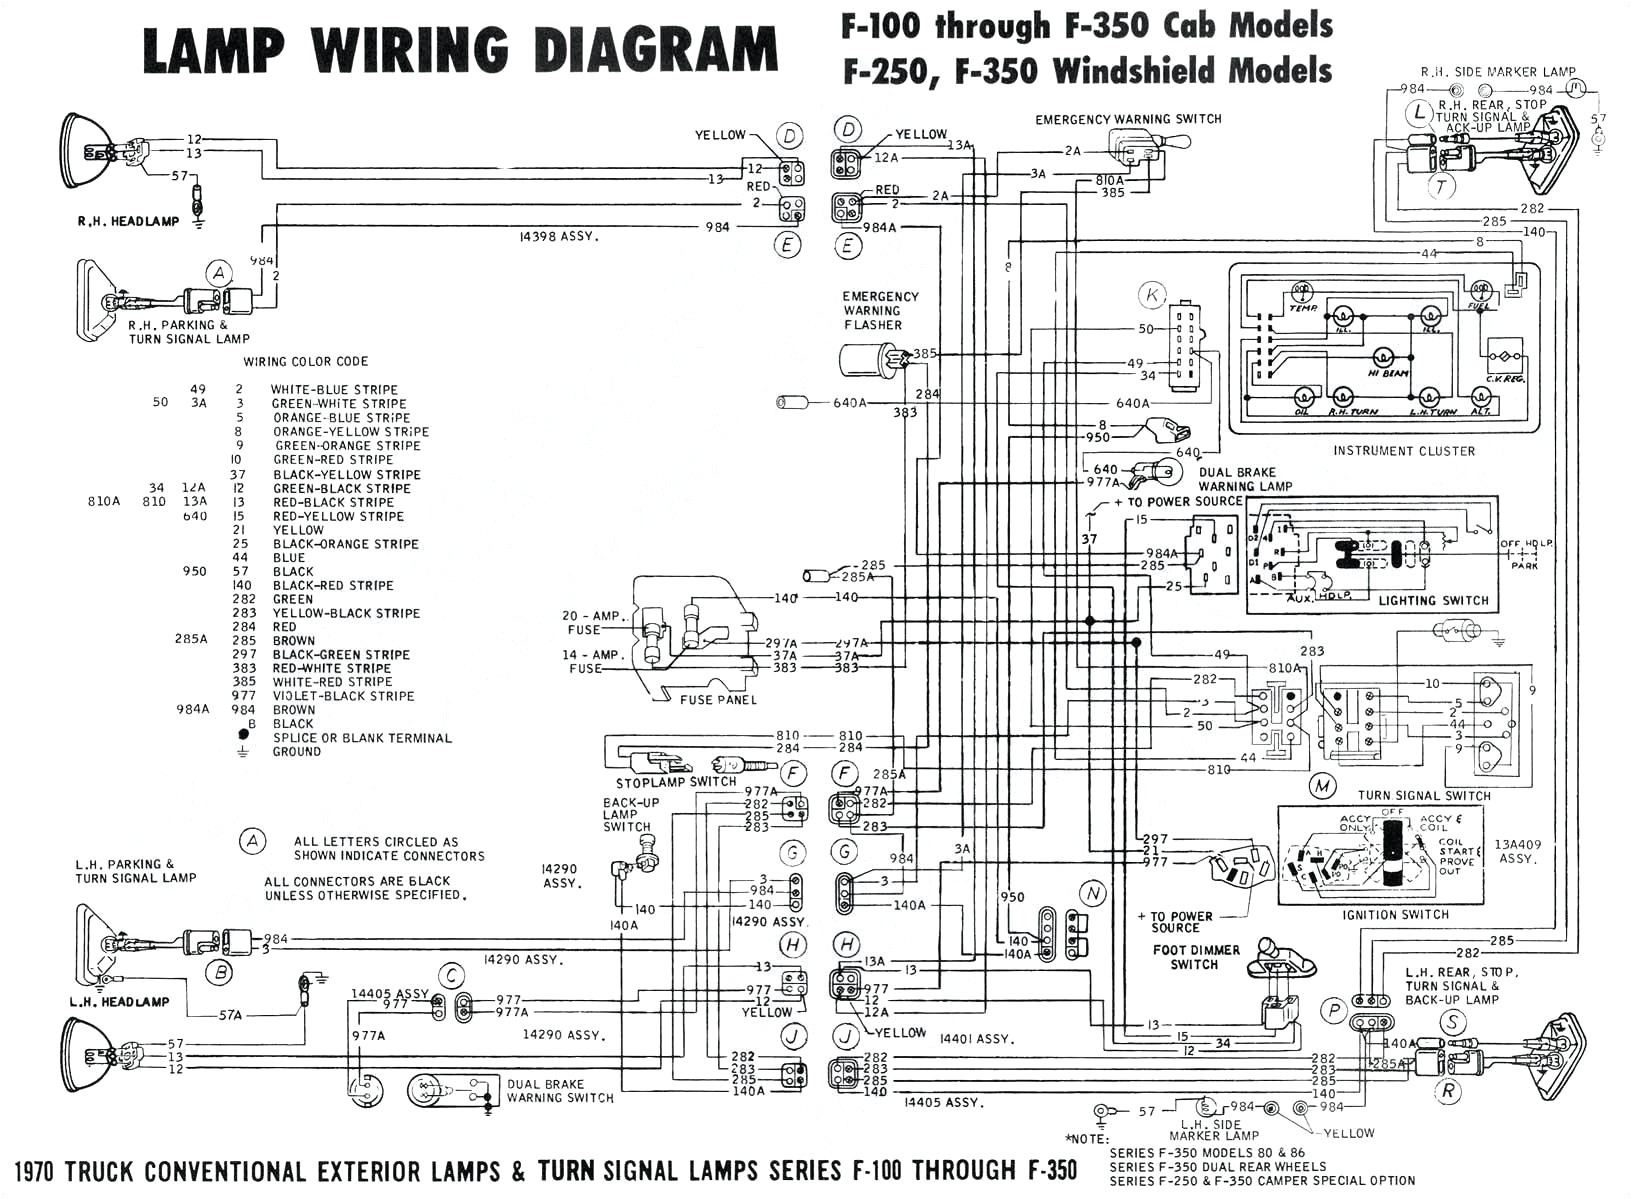 daihatsu transmission diagrams use wiring diagram daihatsu transmission diagrams